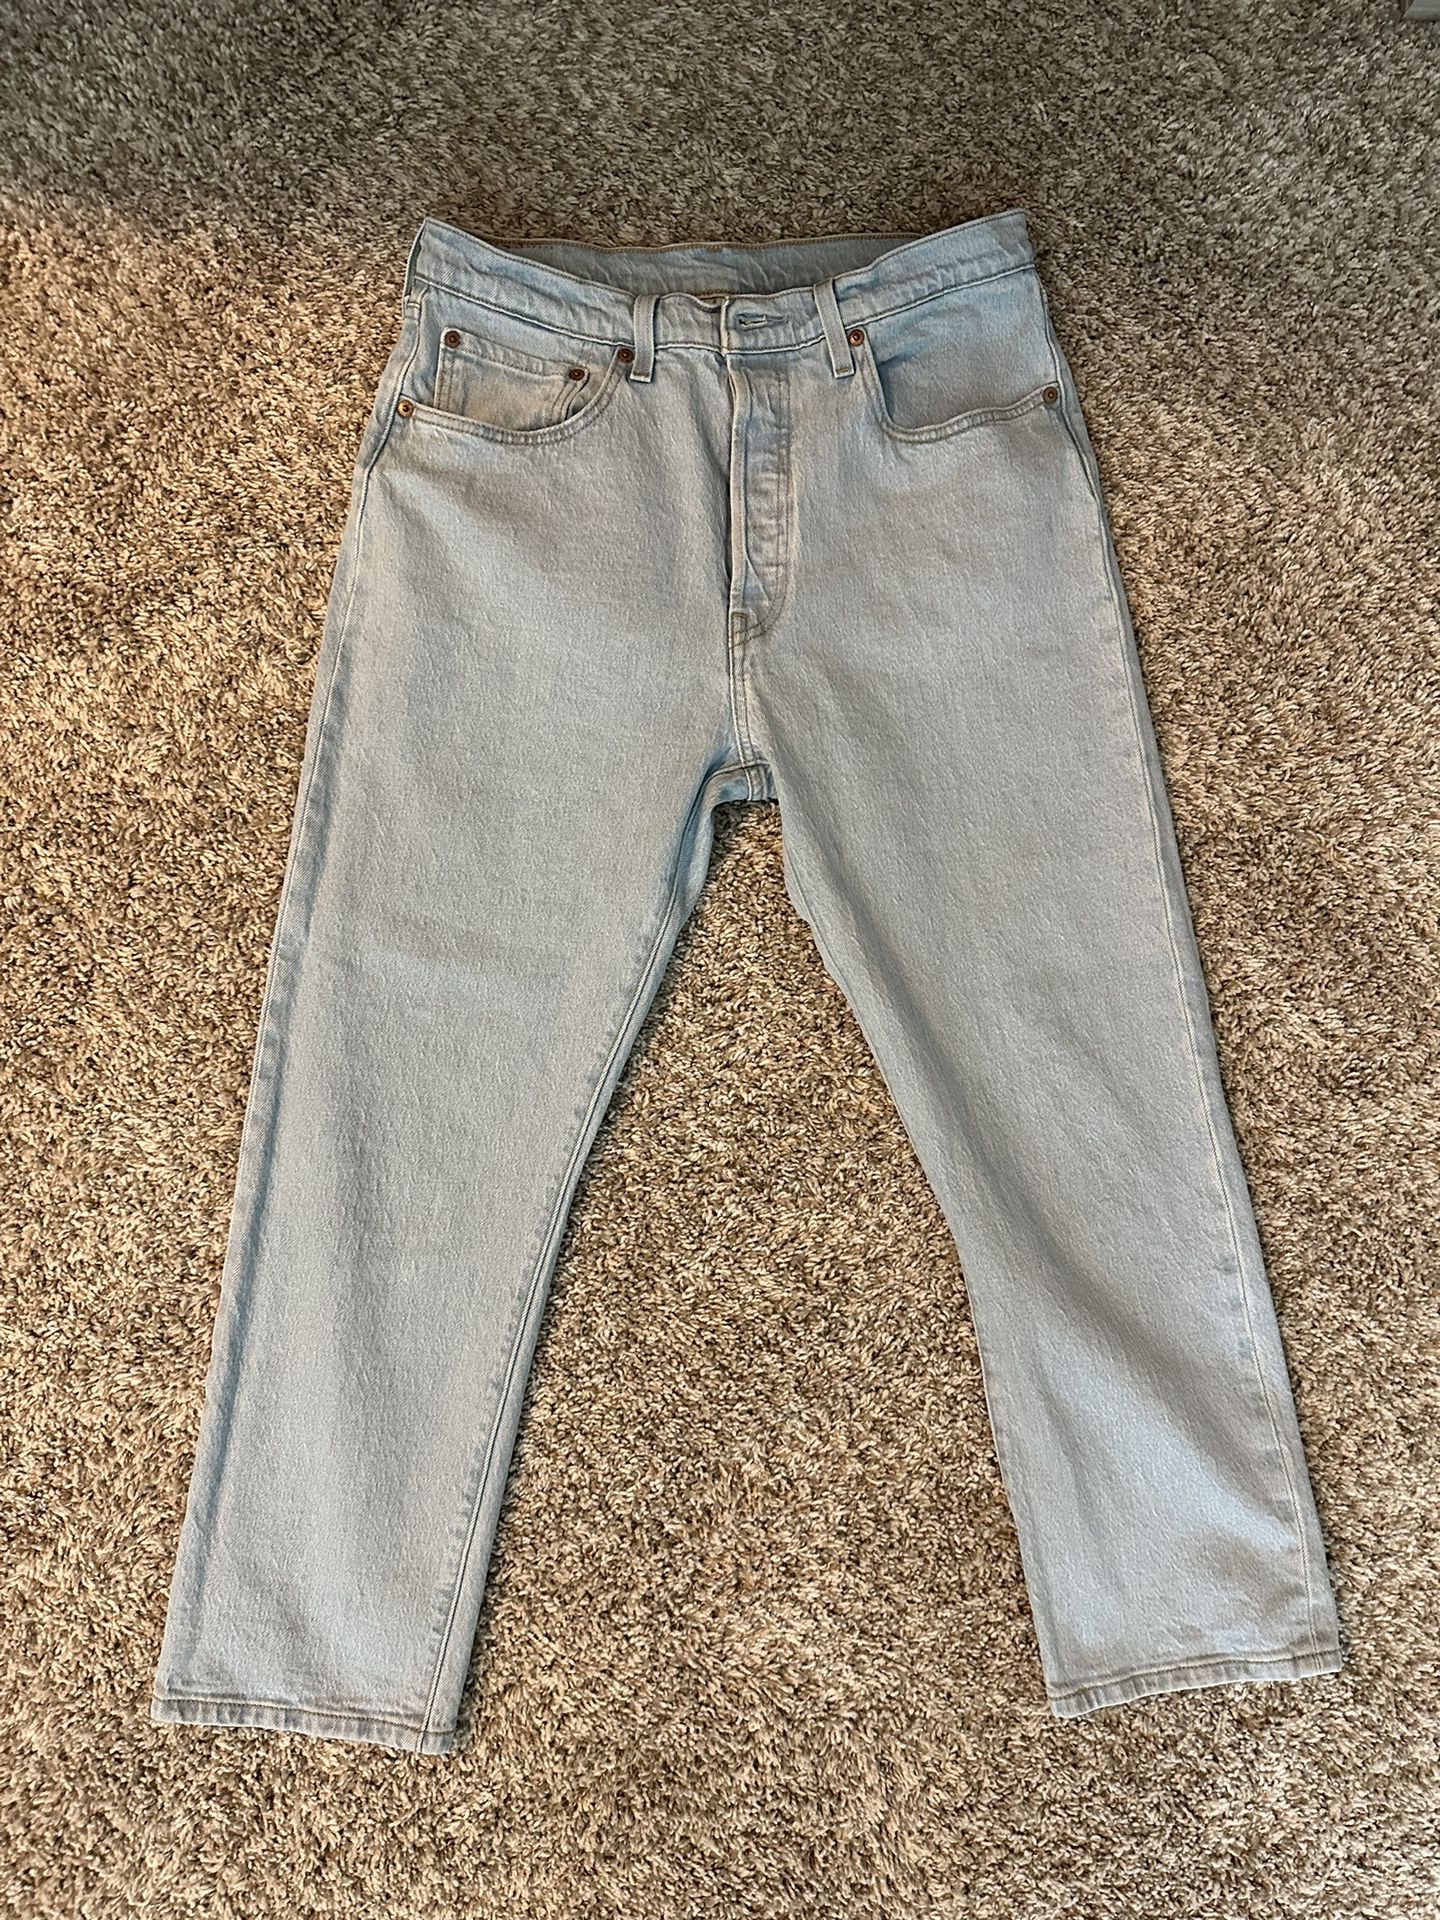 Levis jeans 501 light blue 